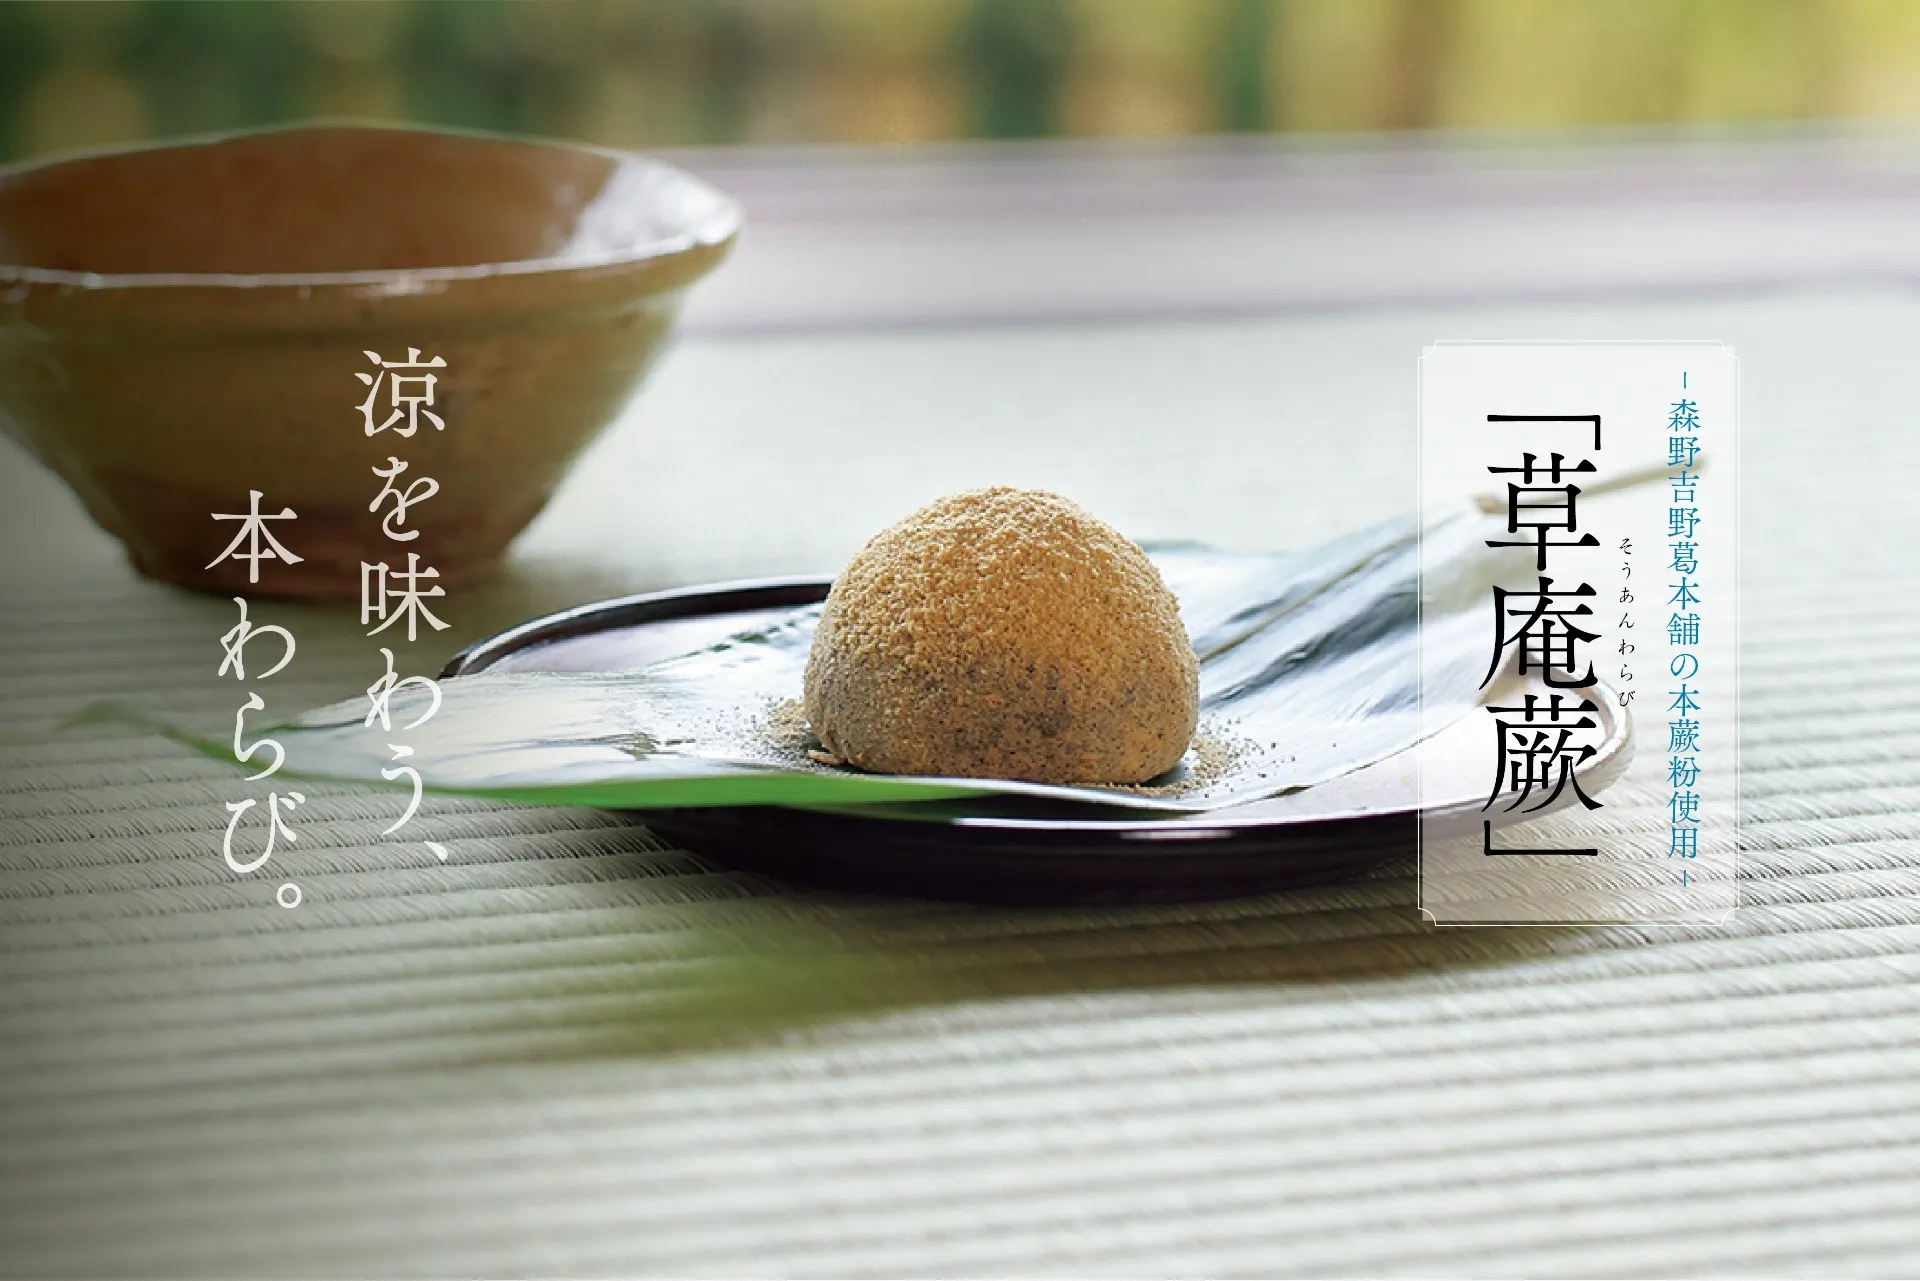 【生菓子】夏一番のおすすめ生菓子「草庵蕨」